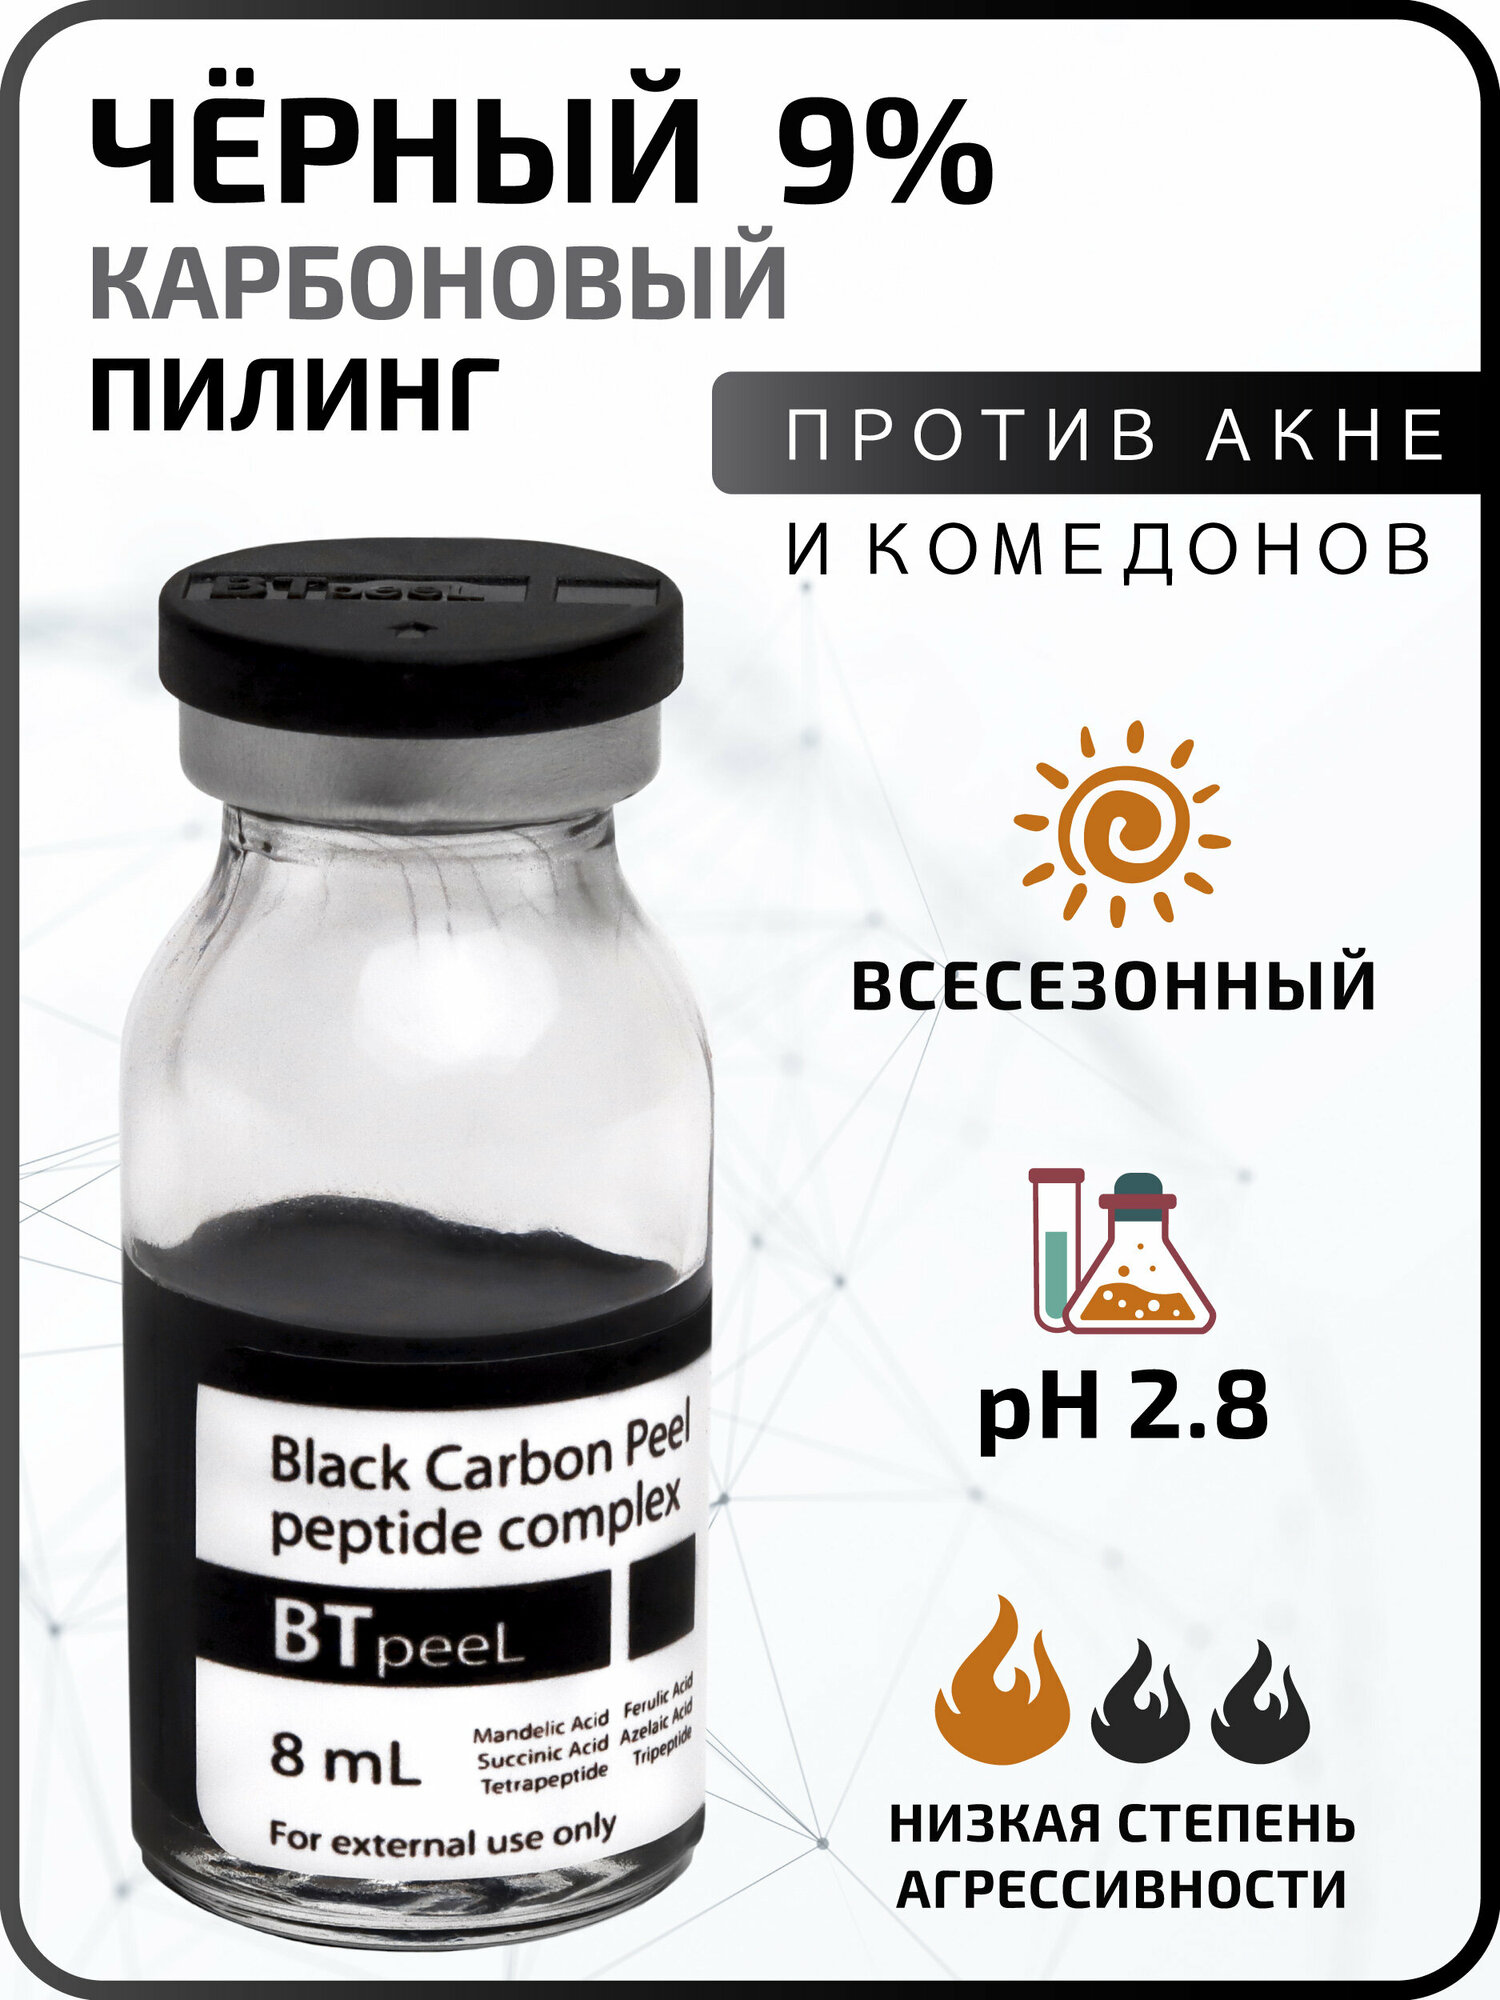 Черный пилинг карбоновый с пептидным комплексом Black Carbon Peel BTpeeL, 8 мл